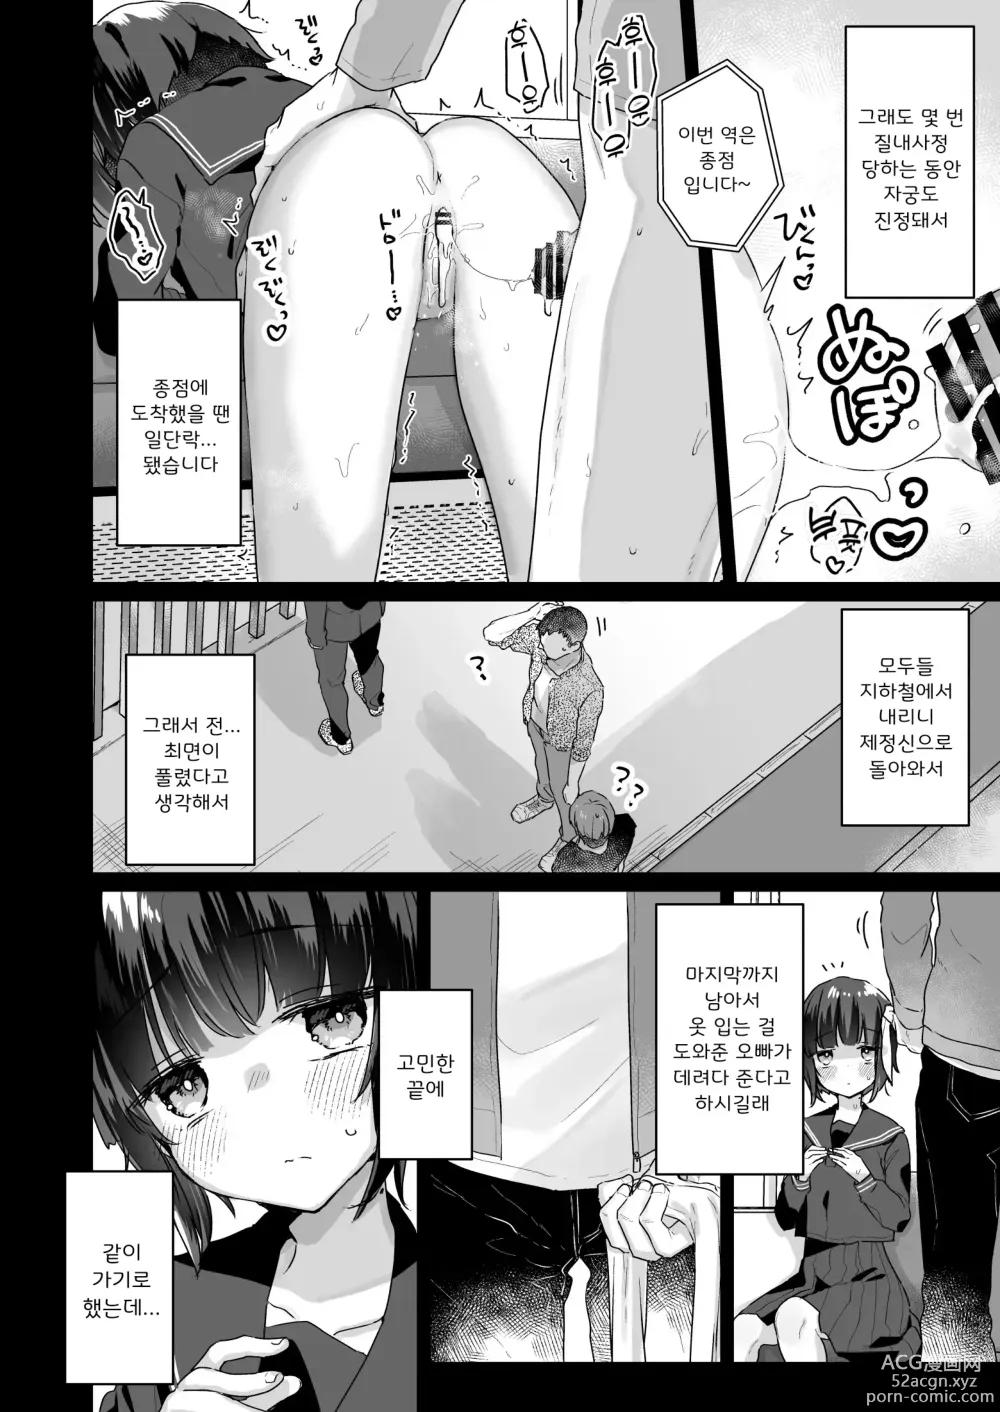 Page 5 of doujinshi 되고 싶지 않았는데 서큐버스가 되어버린 야마다양 ~호텔로 데려가지는 편~